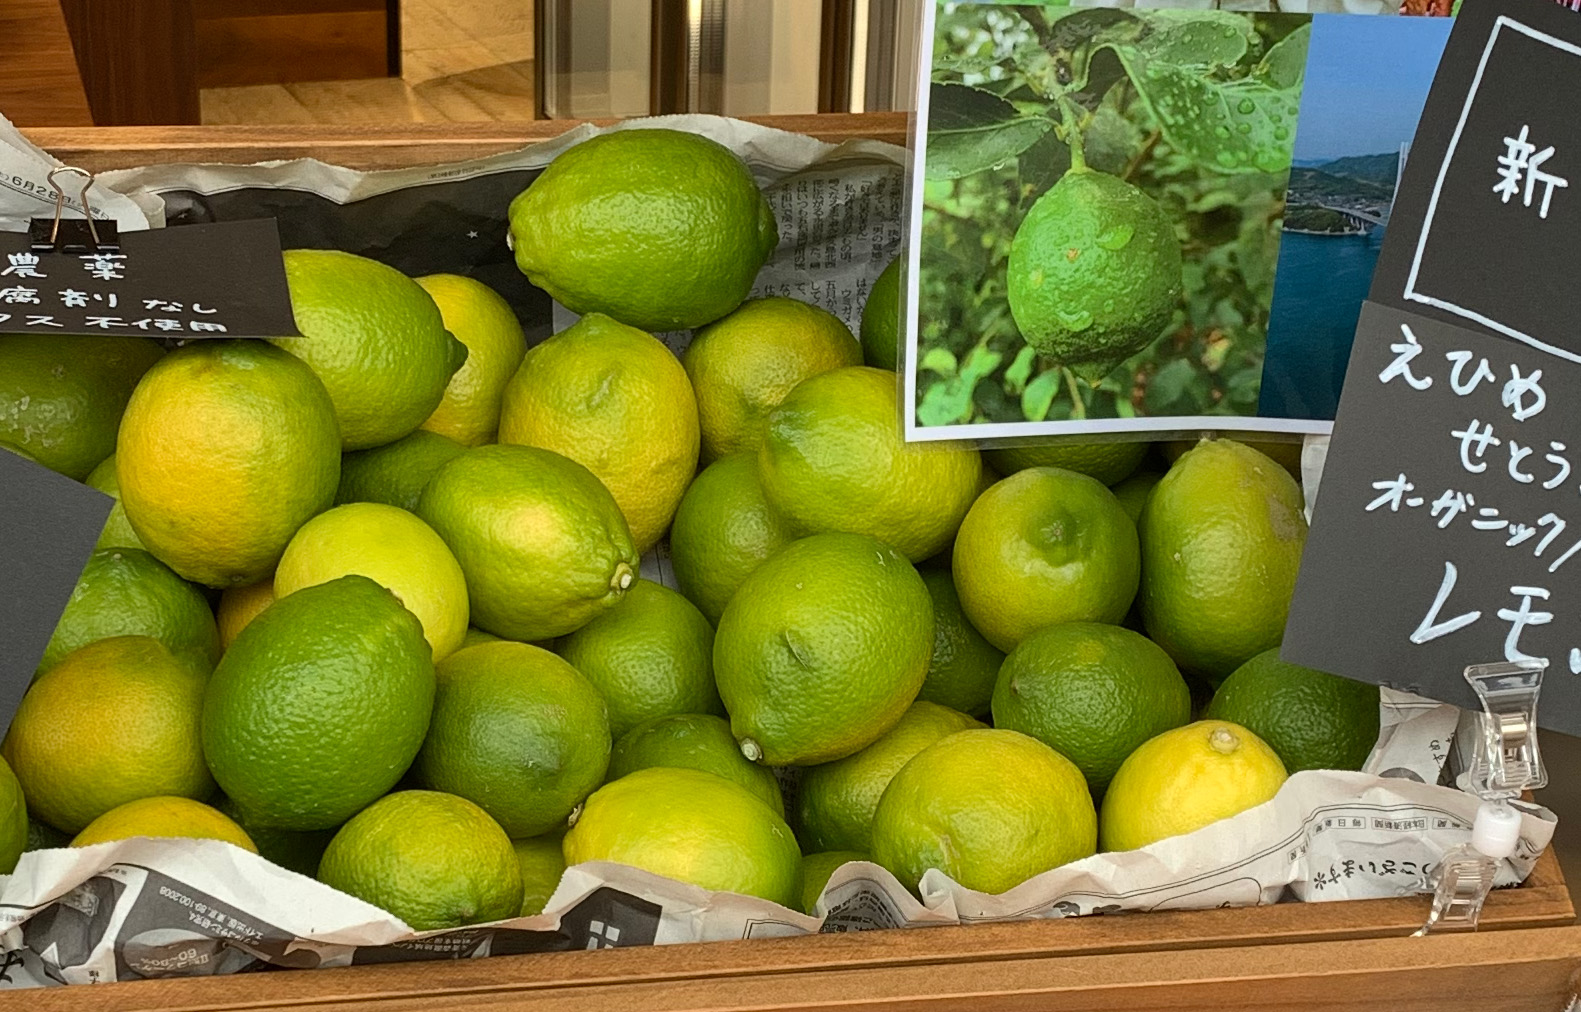 愛媛県大三島産の有機栽培のノンワックスレモン届きました。